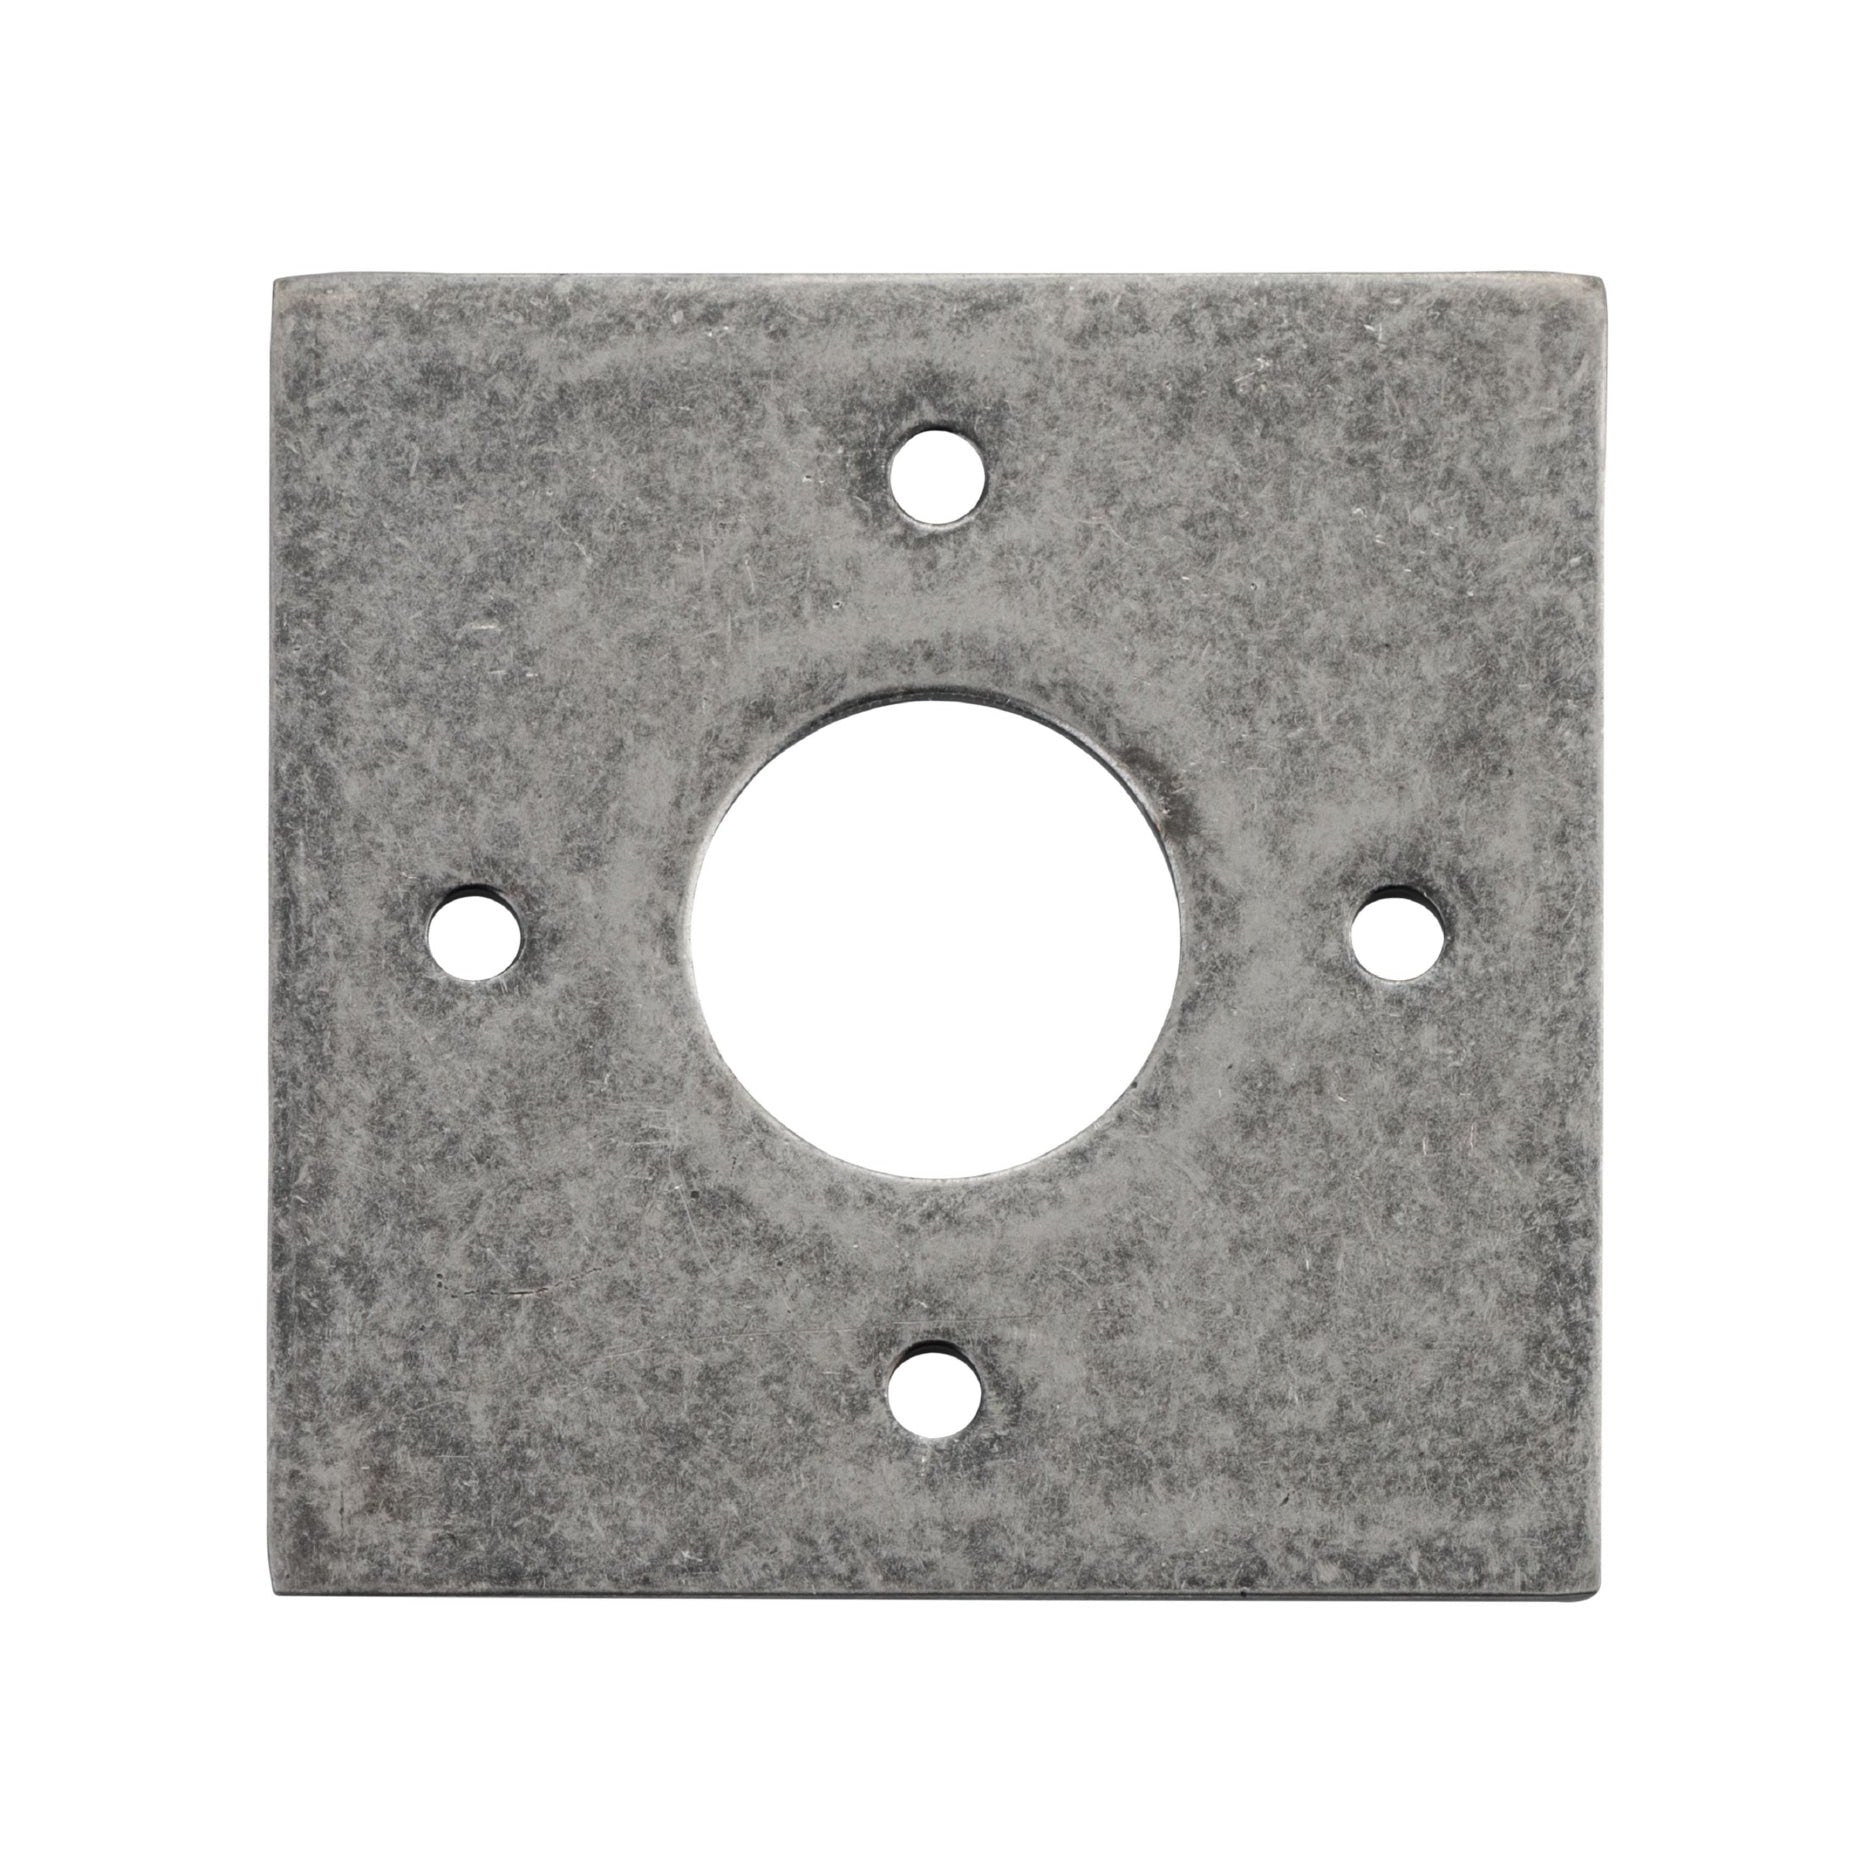 Iver Door Handles & Knobs Adaptor Plate Pair Square Rose Distressed Nickel